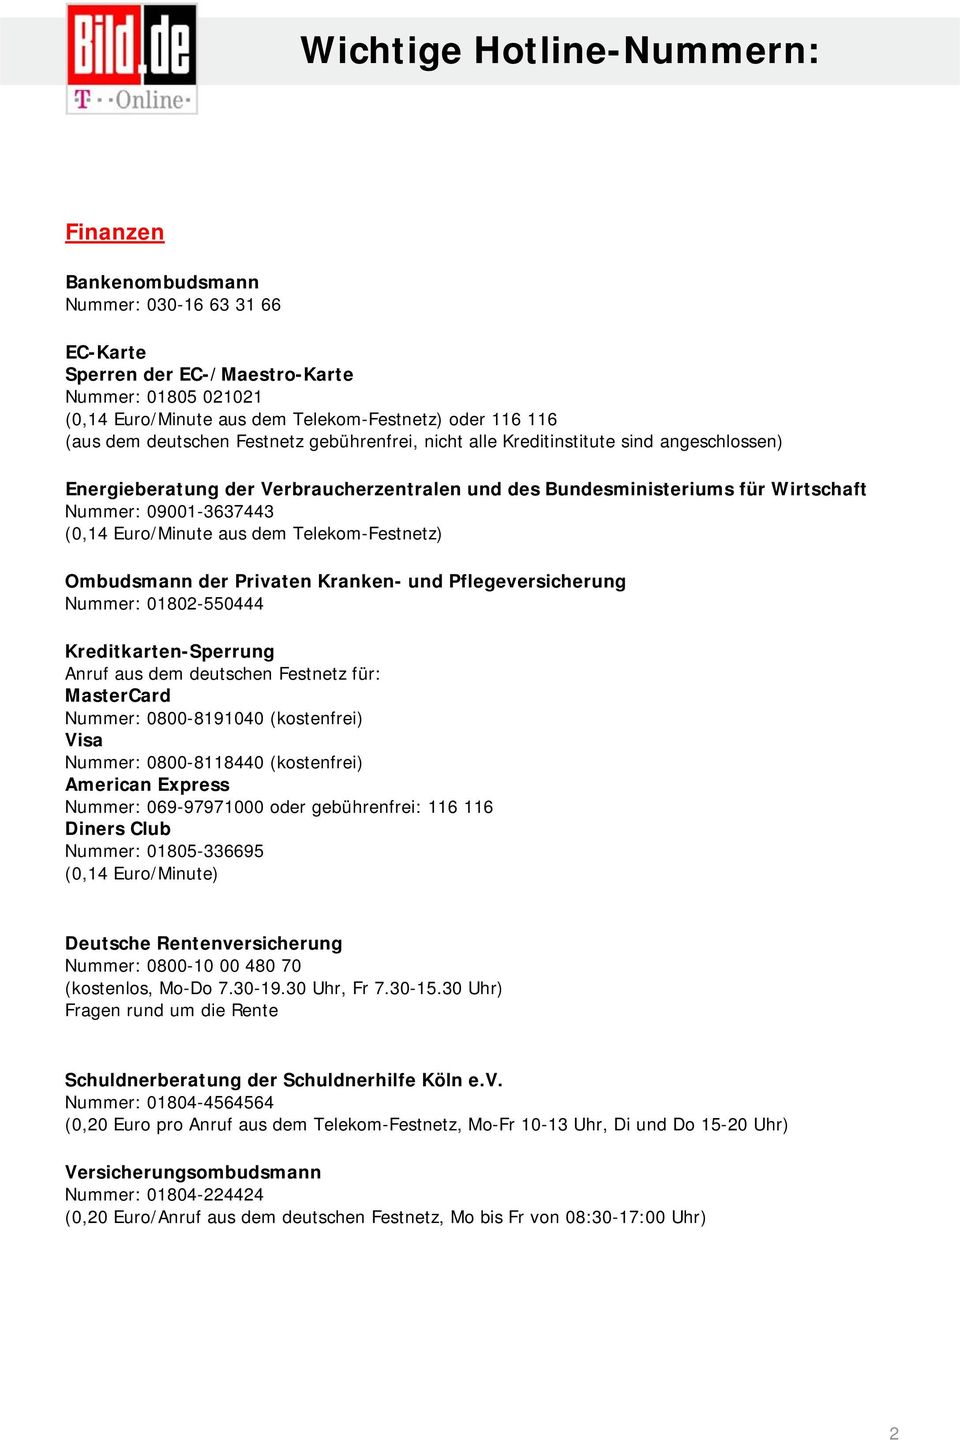 Telekom-Festnetz) Ombudsmann der Privaten Kranken- und Pflegeversicherung Nummer: 01802-550444 Kreditkarten-Sperrung Anruf aus dem deutschen Festnetz für: MasterCard Nummer: 0800-8191040 (kostenfrei)